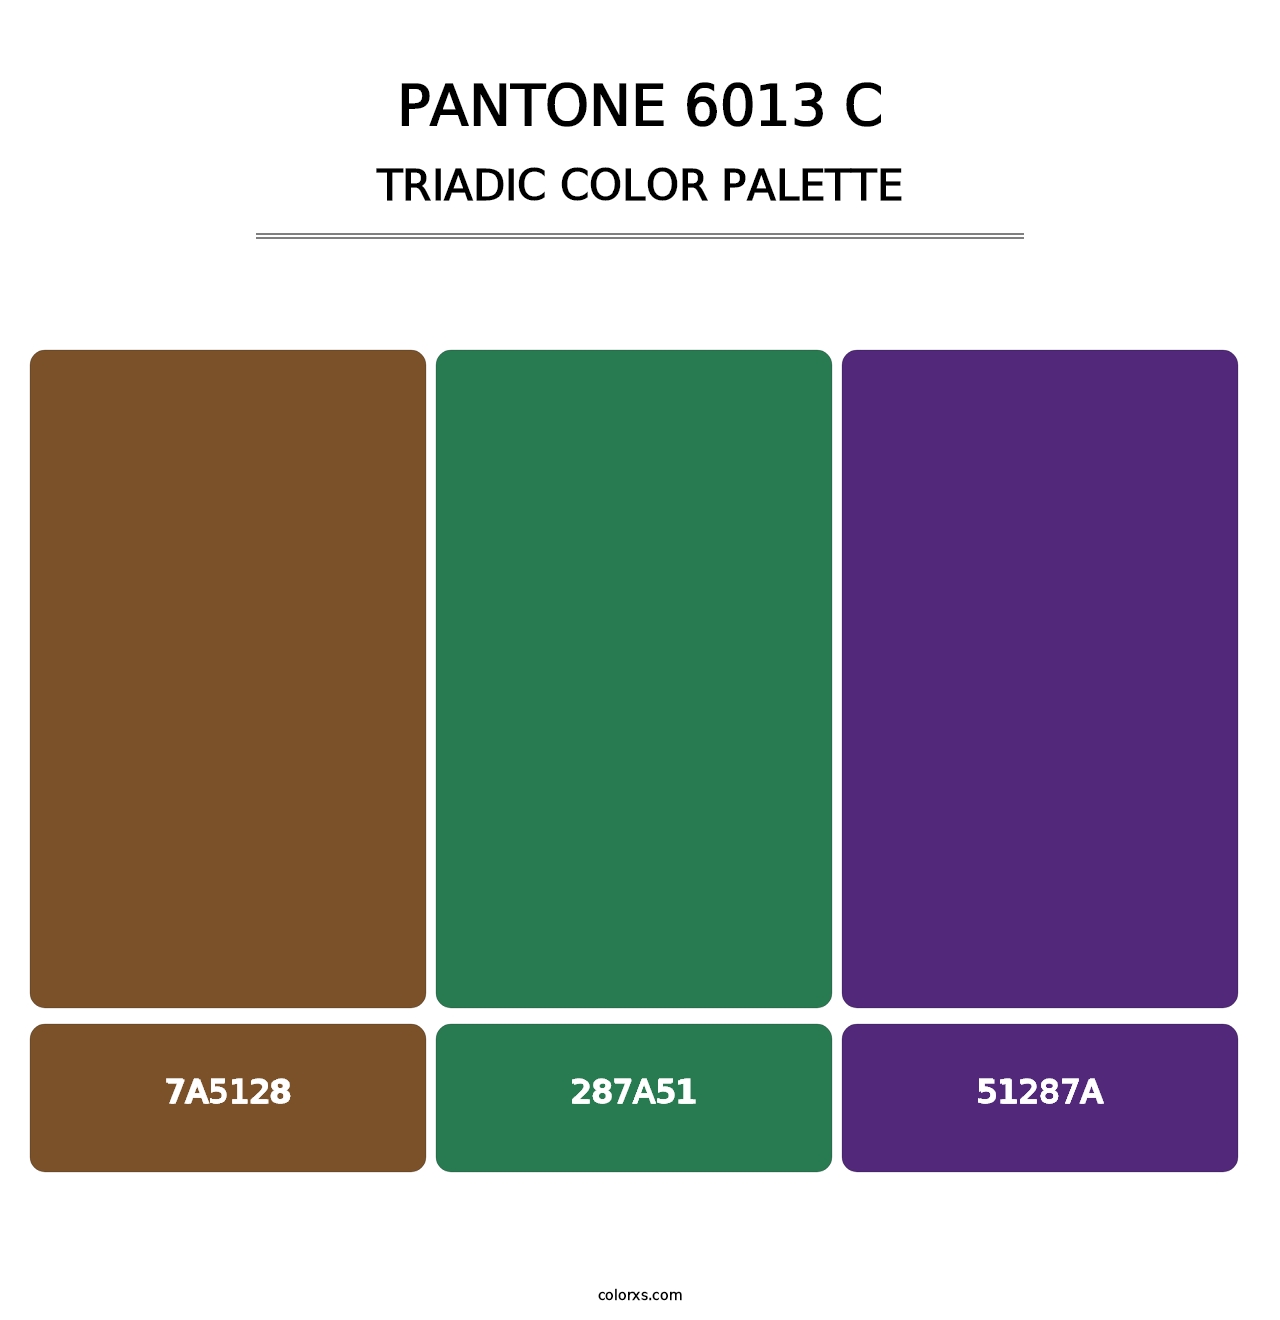 PANTONE 6013 C - Triadic Color Palette